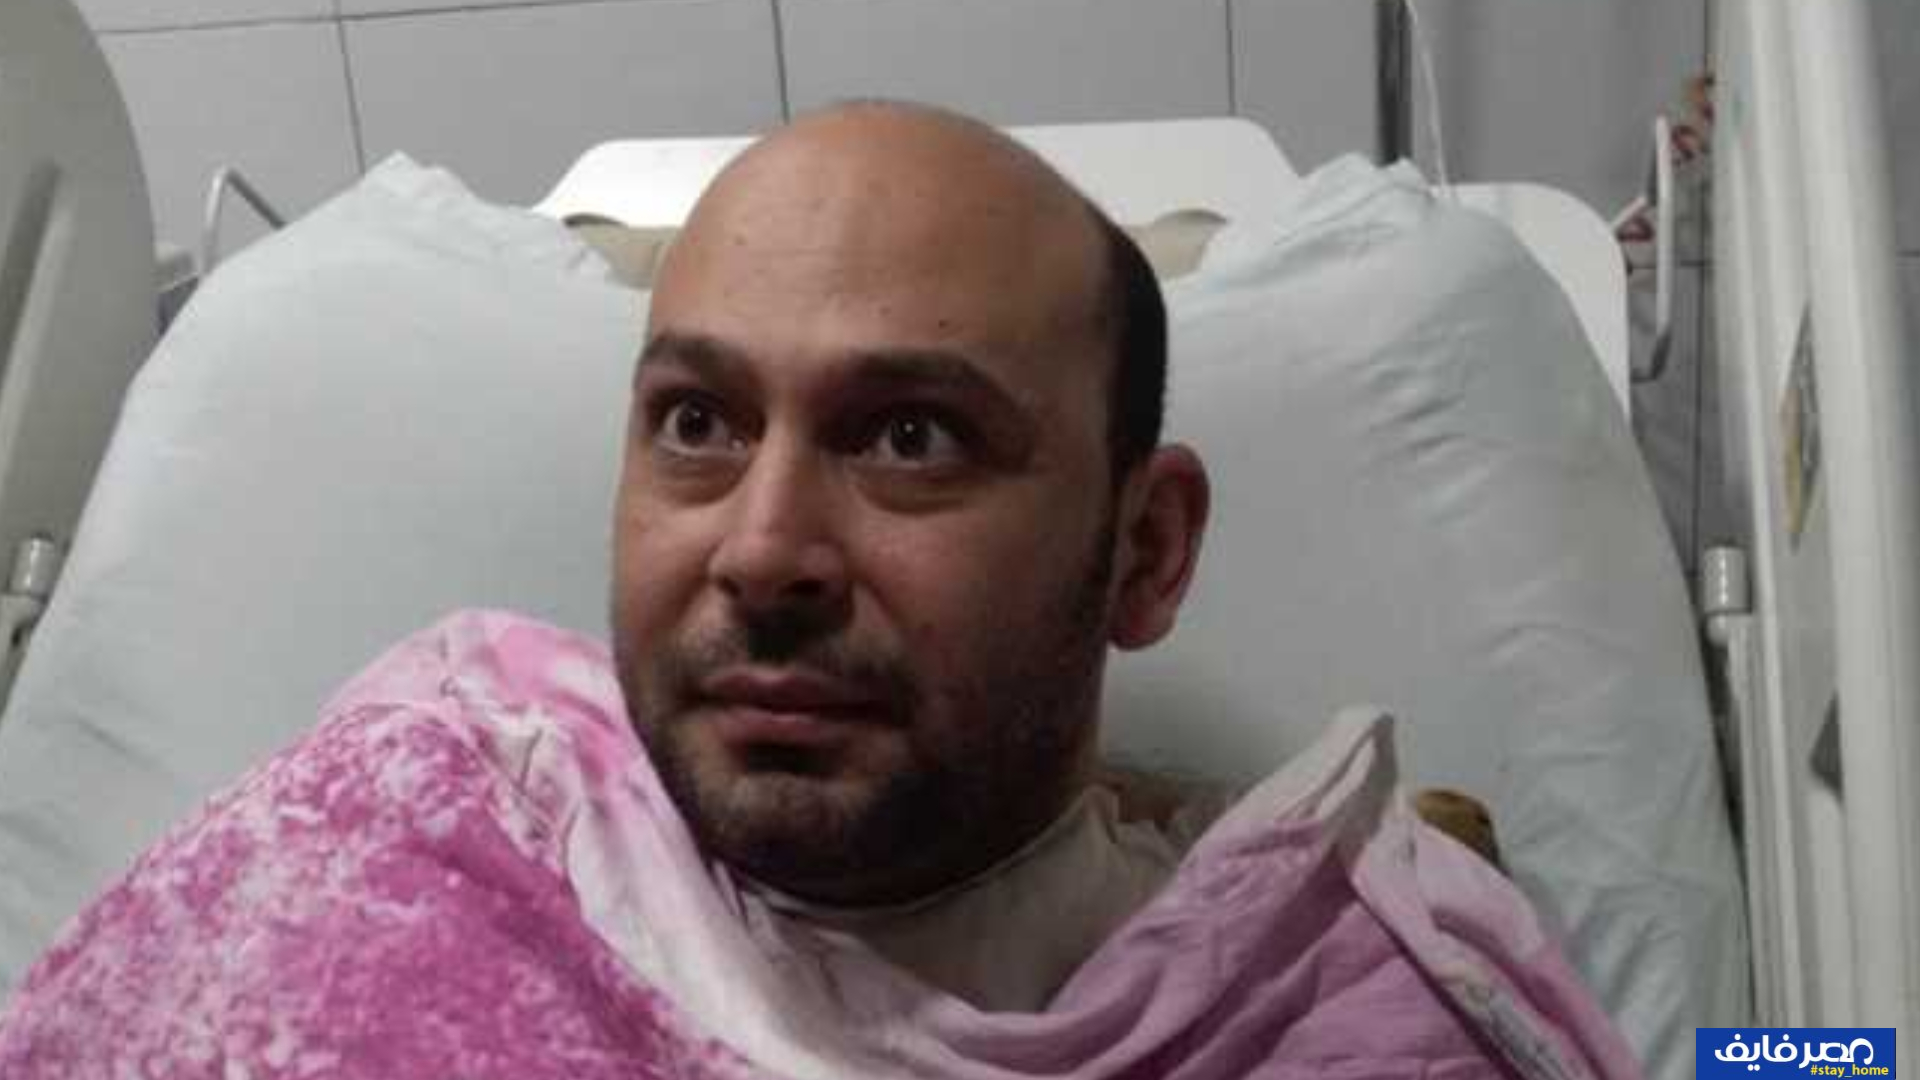 الطبيب محمود سامي يوضح كيف فقد نظره في مستشفى عزل بلطيم